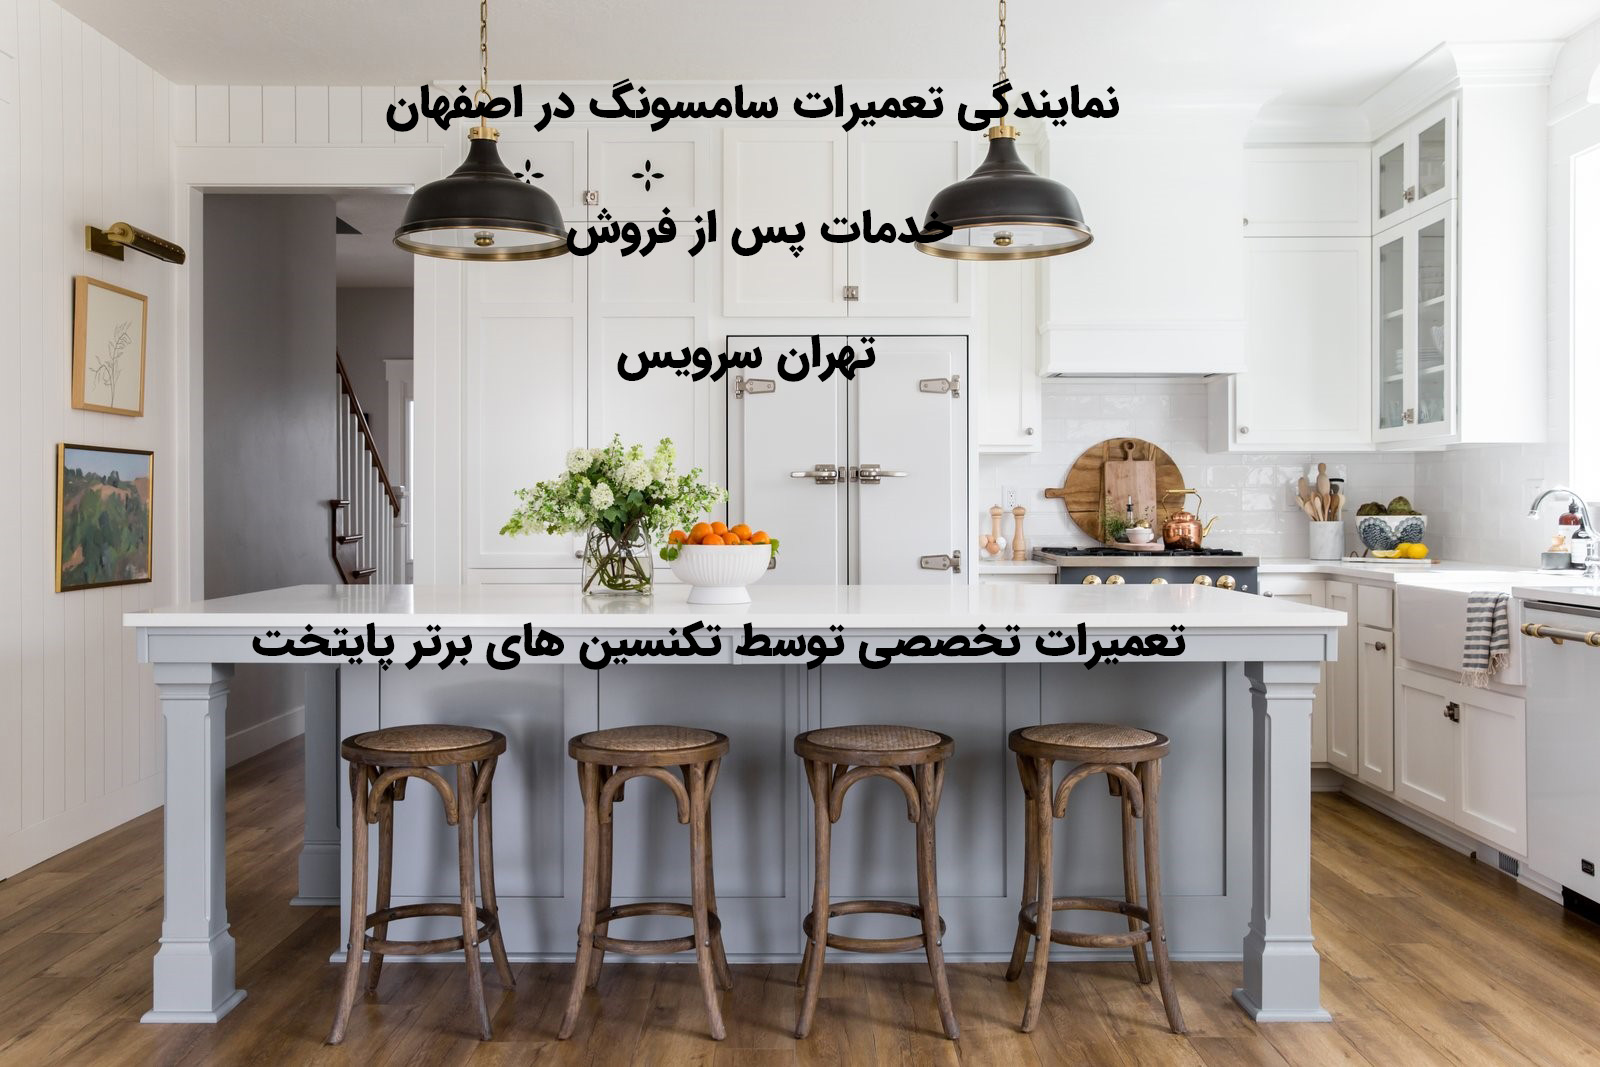 تعمیرات سامسونگ در اصفهان خدمات پس از فروش سامسونگ در اصفهان